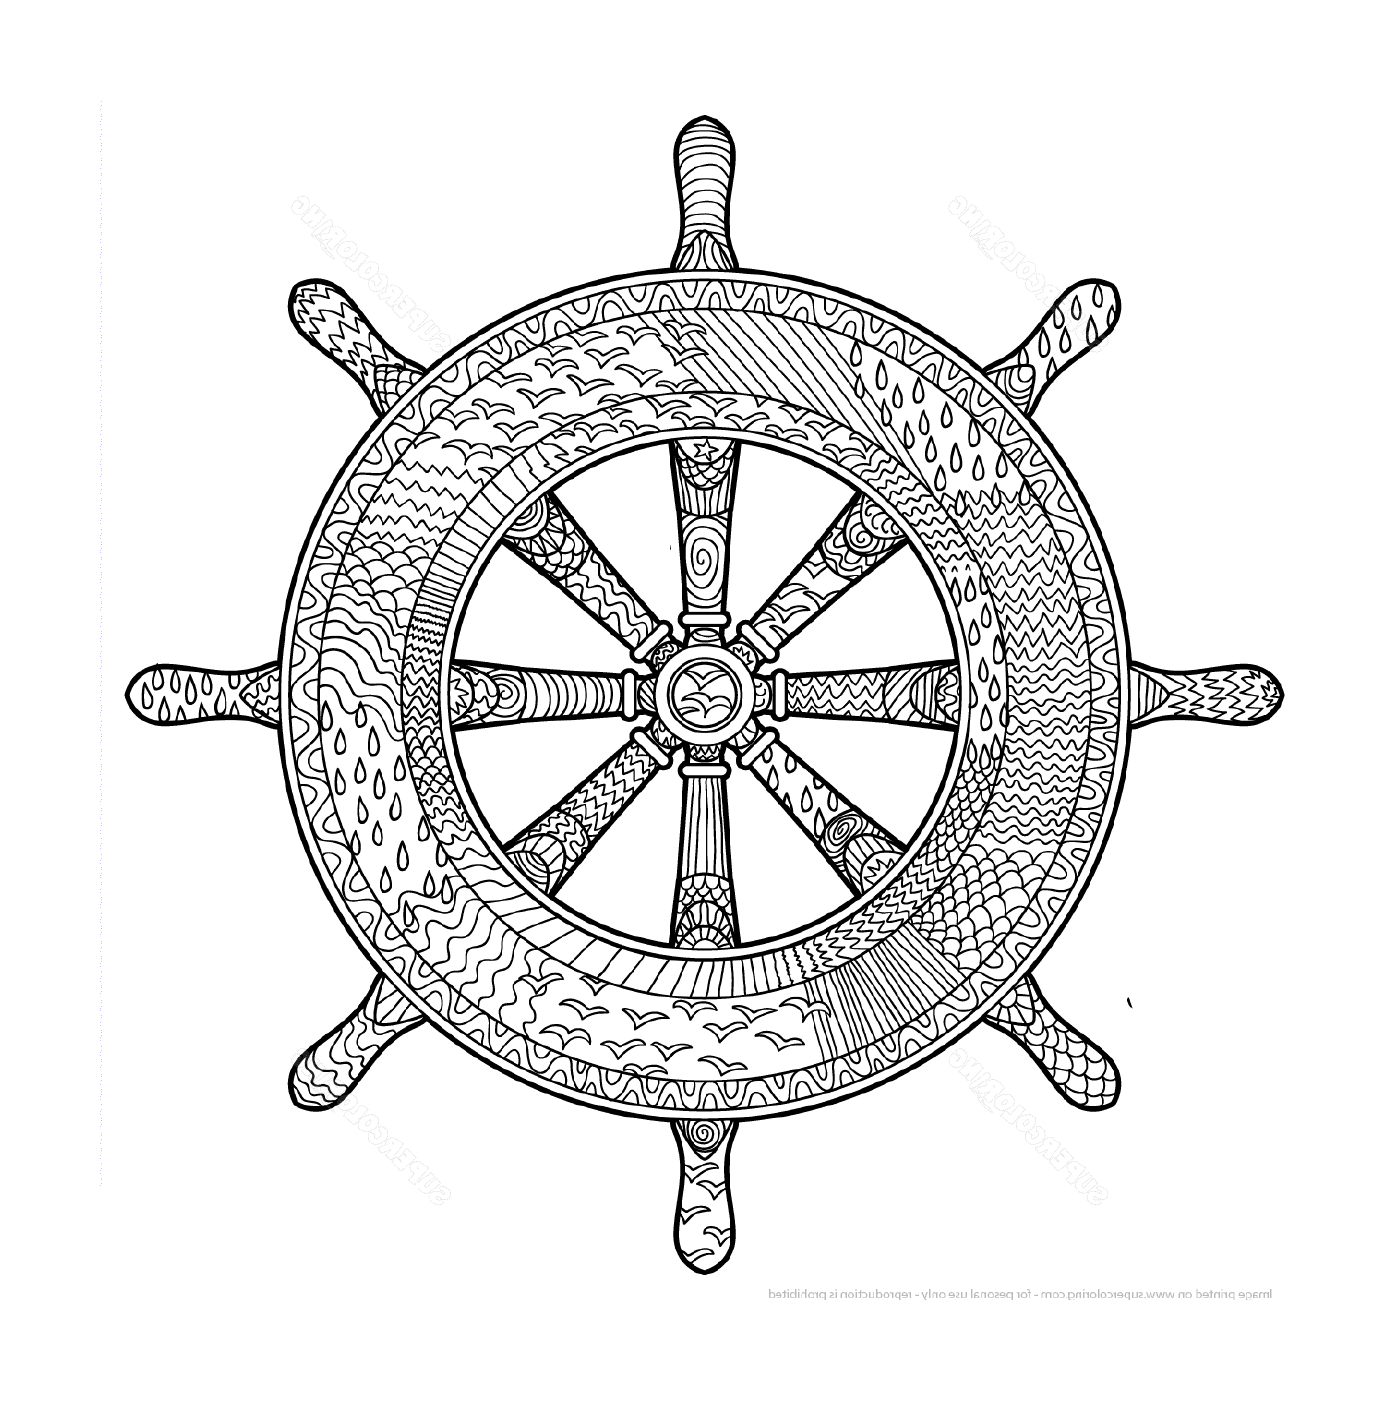  roda do barco do mar 